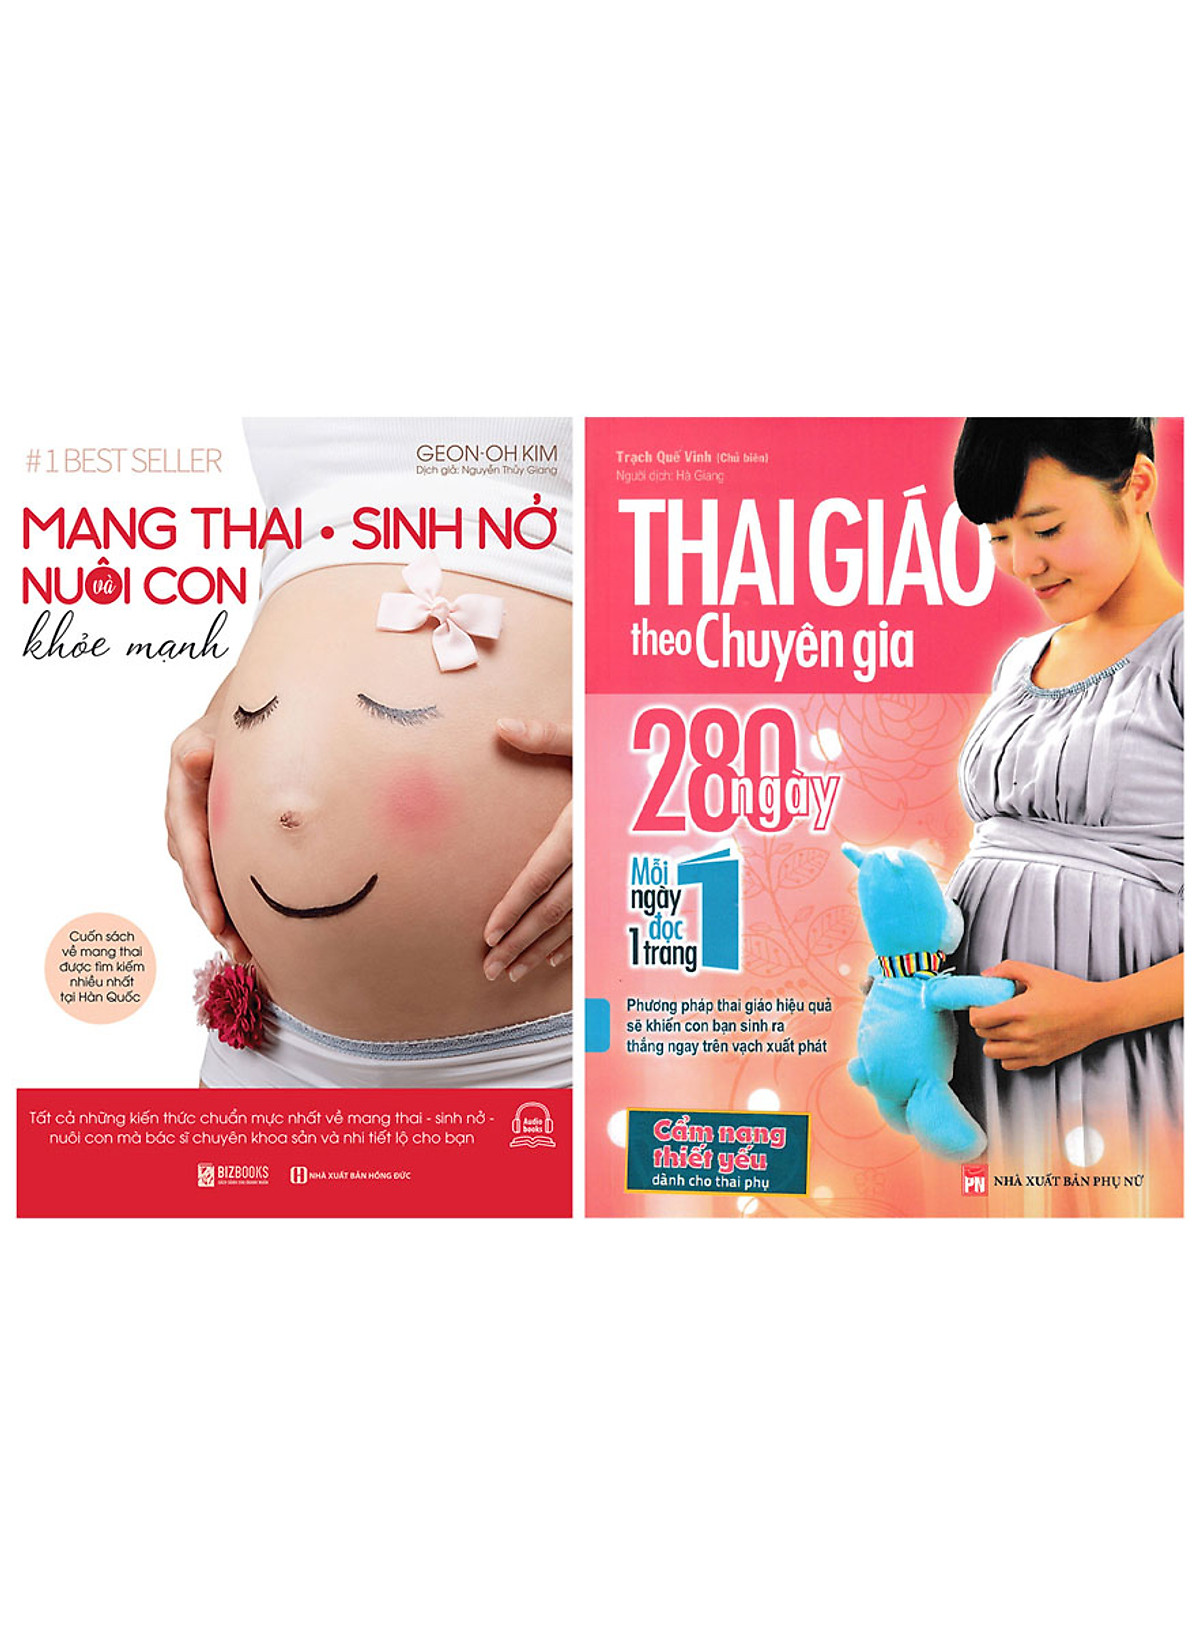 Combo Thai Giáo Theo Chuyên Gia - 280 Ngày - Mỗi Ngày Đọc Một Trang + Mang Thai Sinh Nở Và Nuôi Con Khỏe Mạnh (2 Cuốn) 